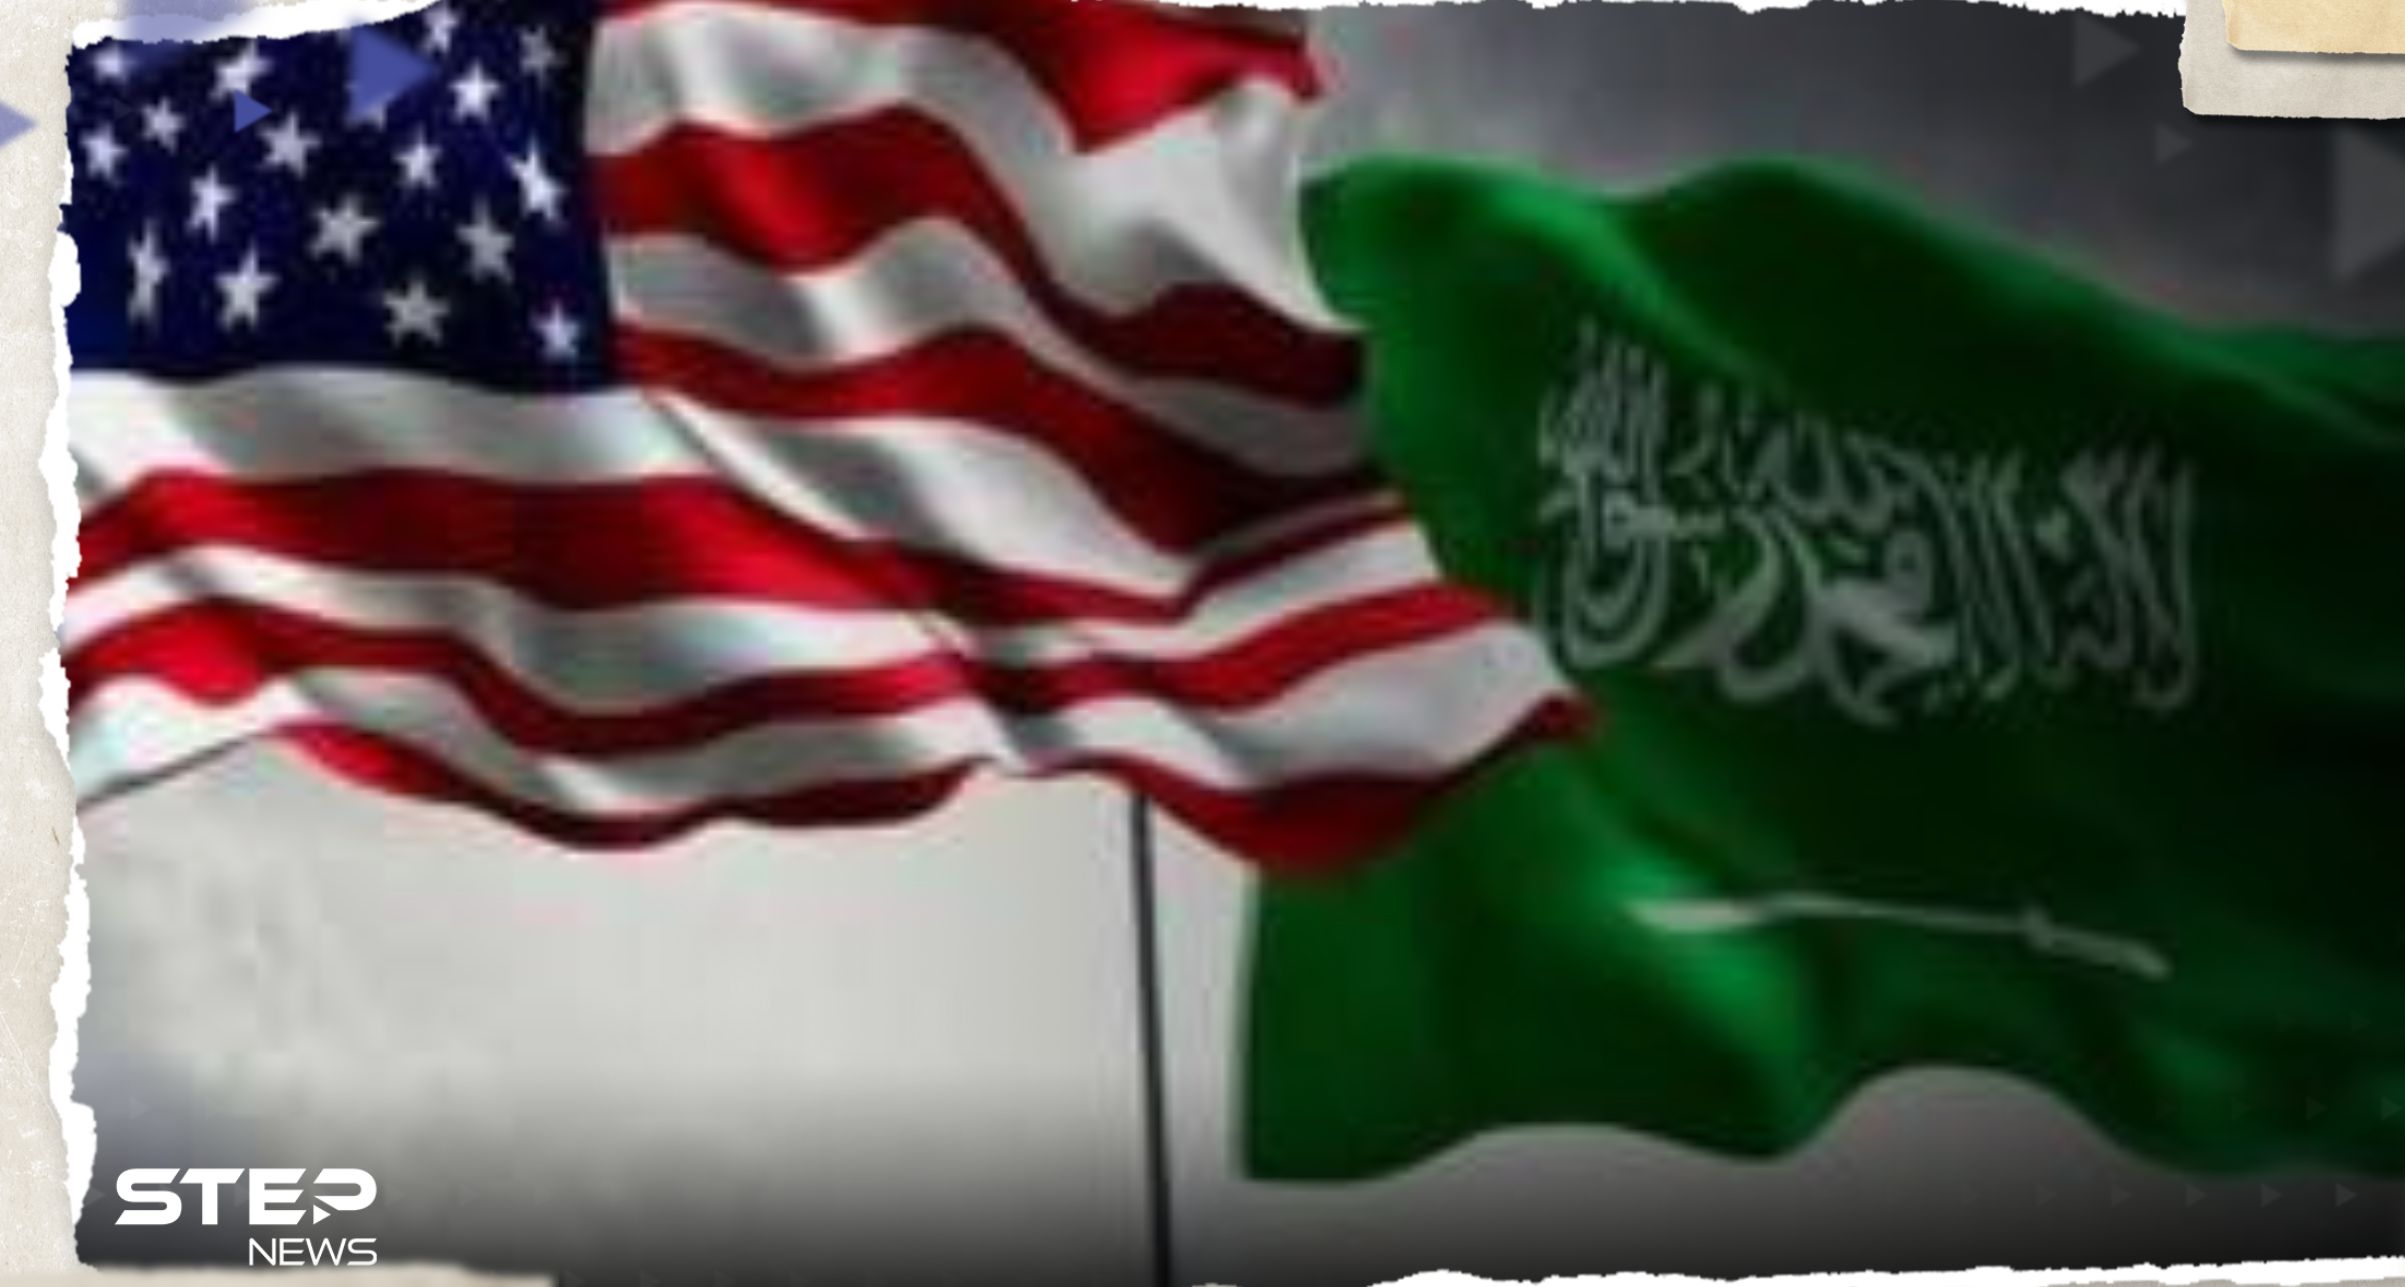 بيان سعودي أمريكي حول طرفي الصراع بالسودان وسبب عدم وصول المساعدات